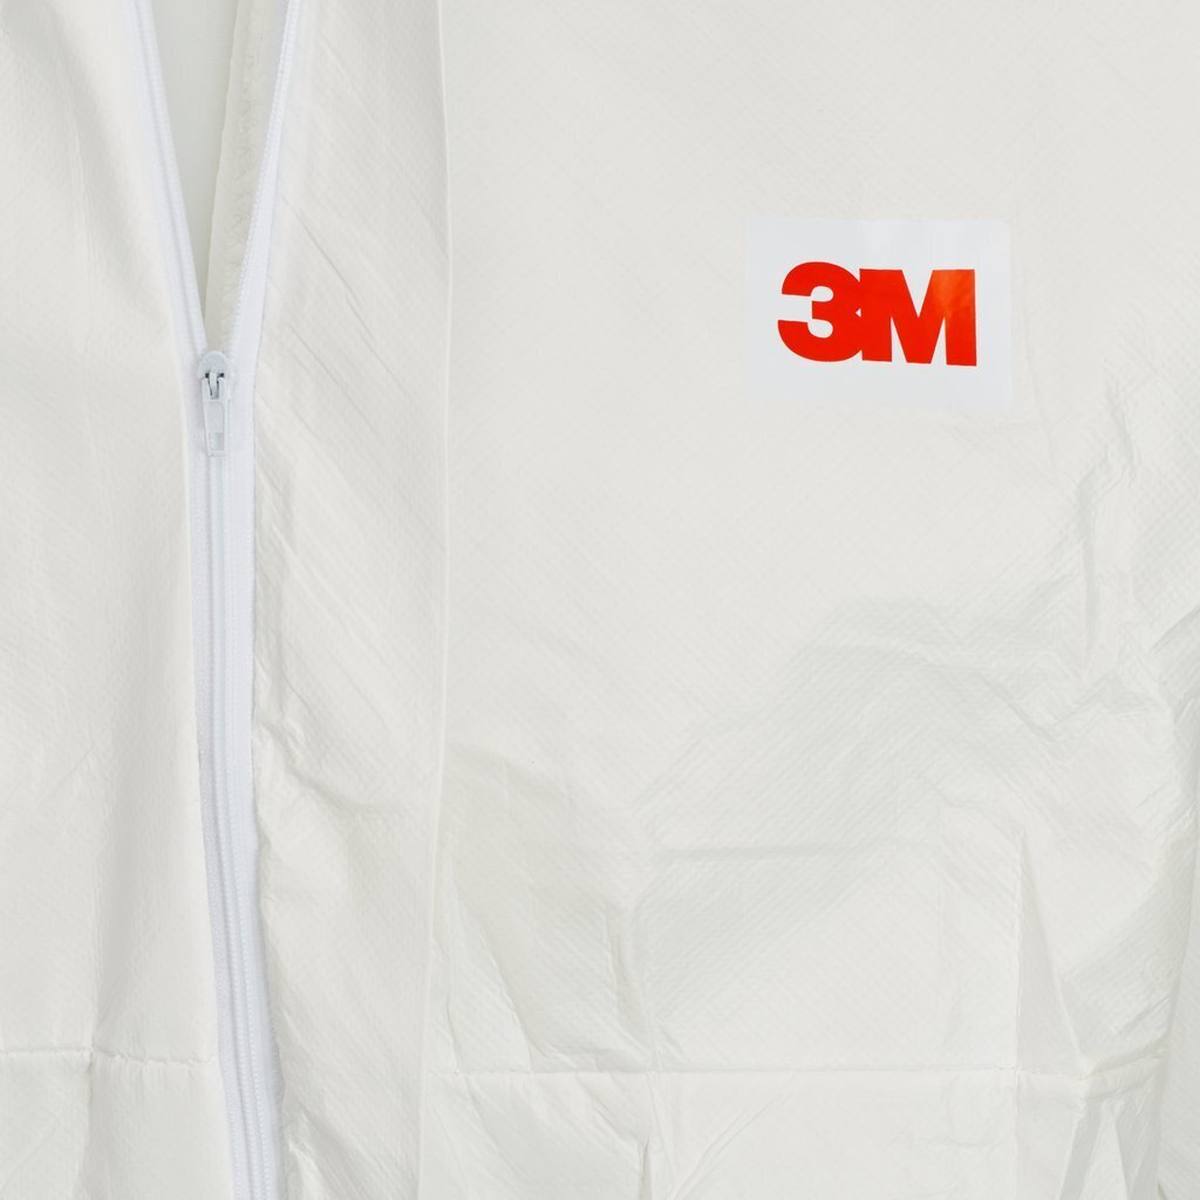 3M Protective suit 50198XL white+blue, TYPE 5/6, size XL